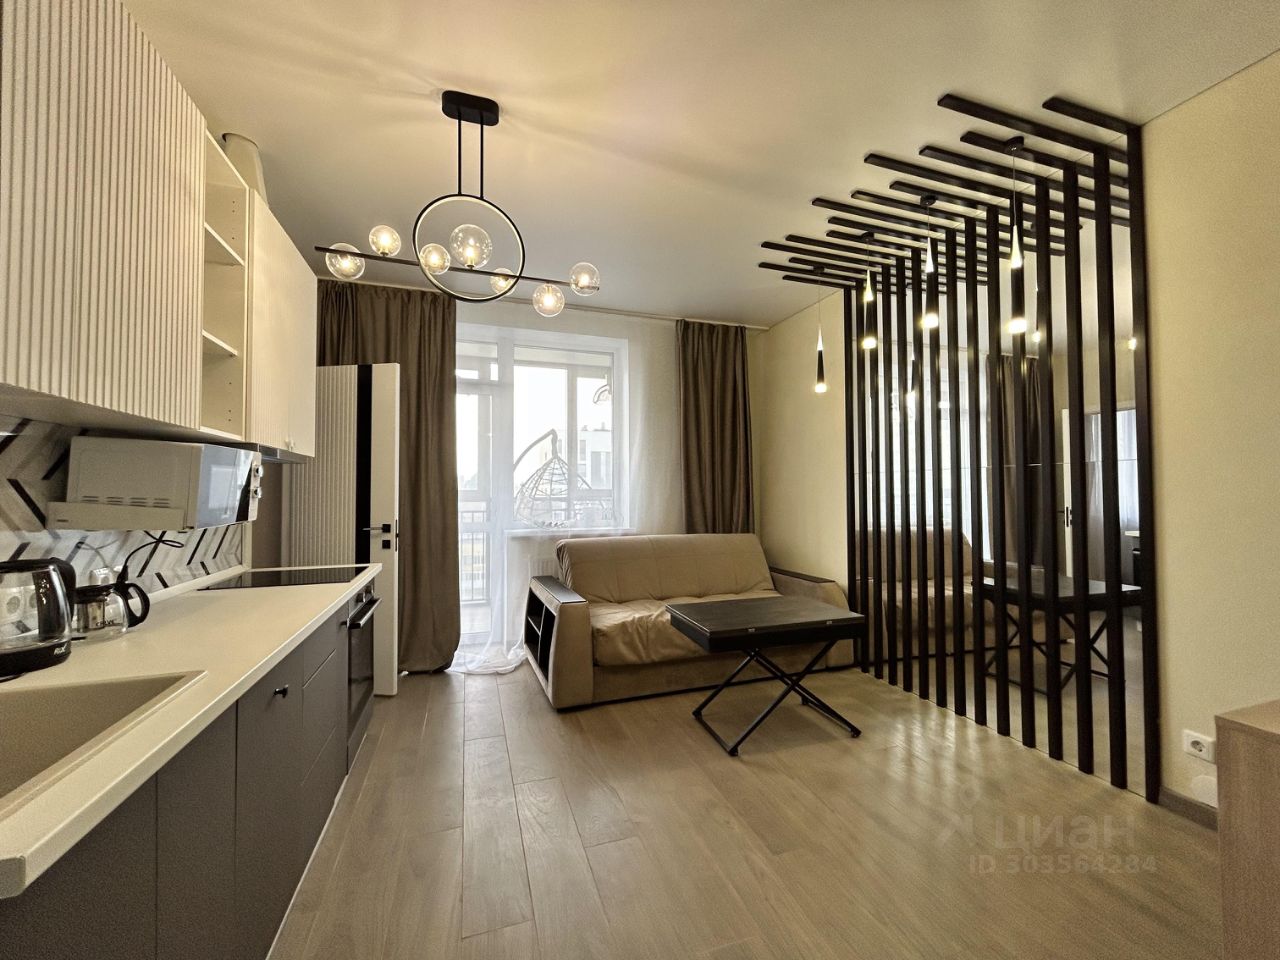 Светлая квартира с современной кухней, просторной планировкой и стильным интерьером. 12 этаж, 50 кв.м, Екатеринбург.